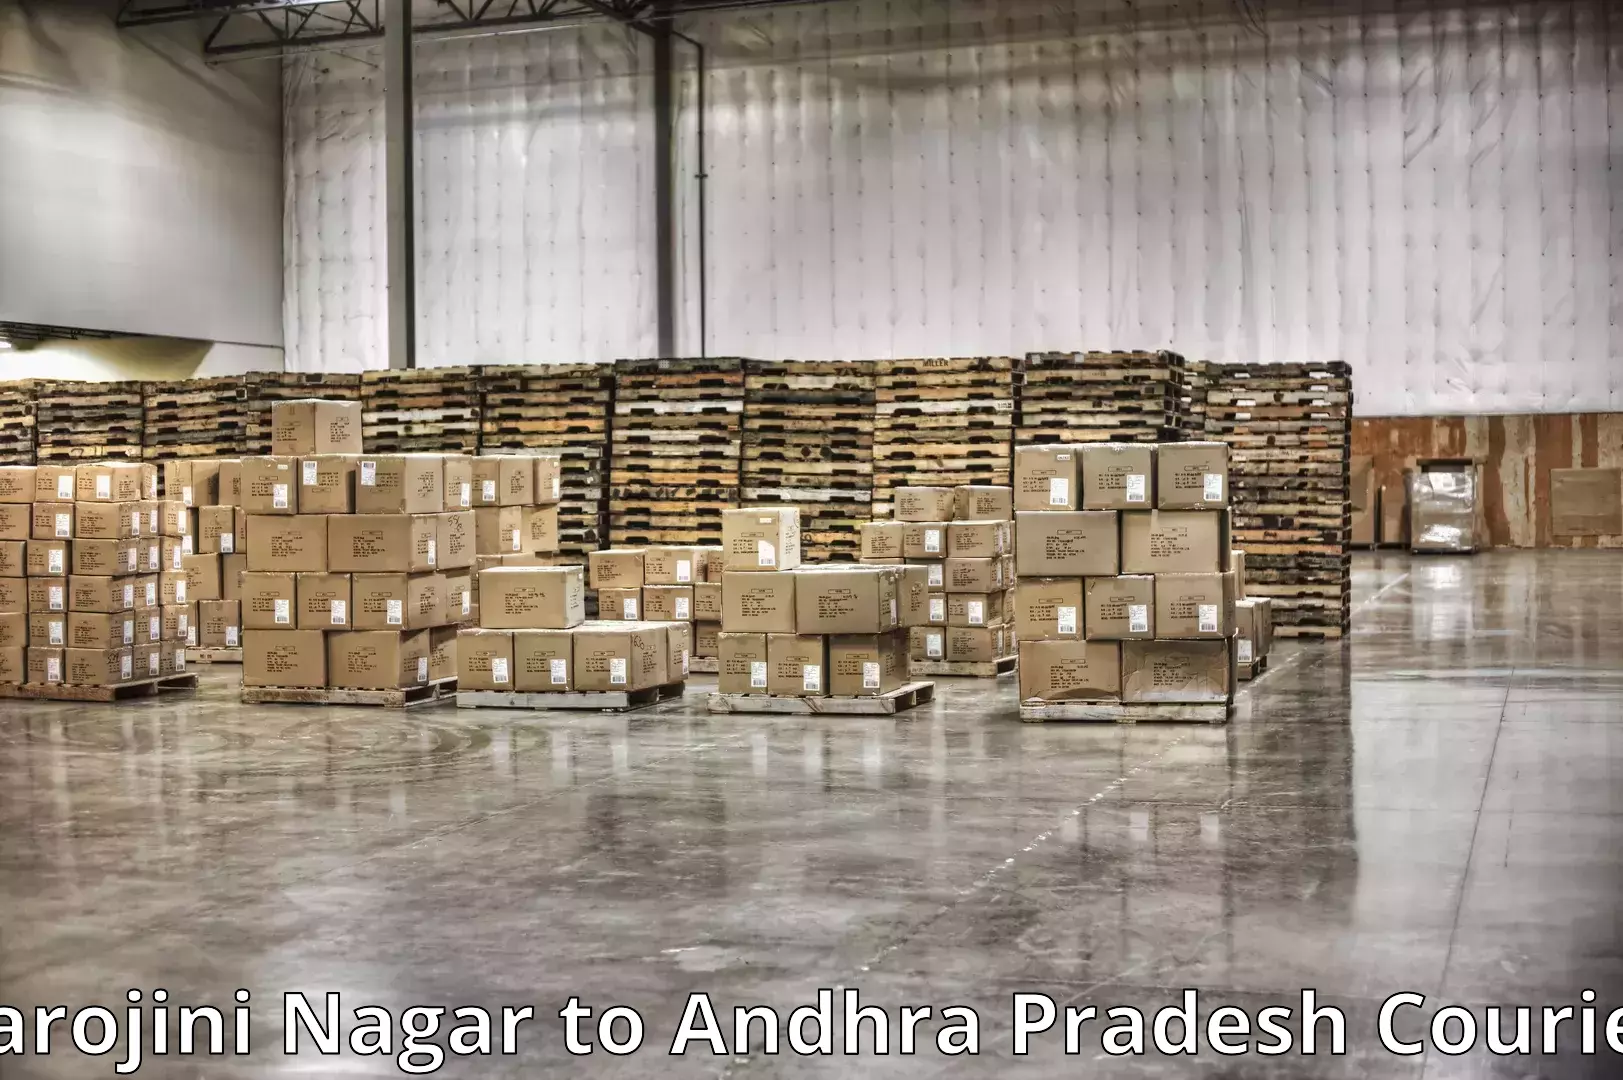 Home moving specialists Sarojini Nagar to Andhra Pradesh